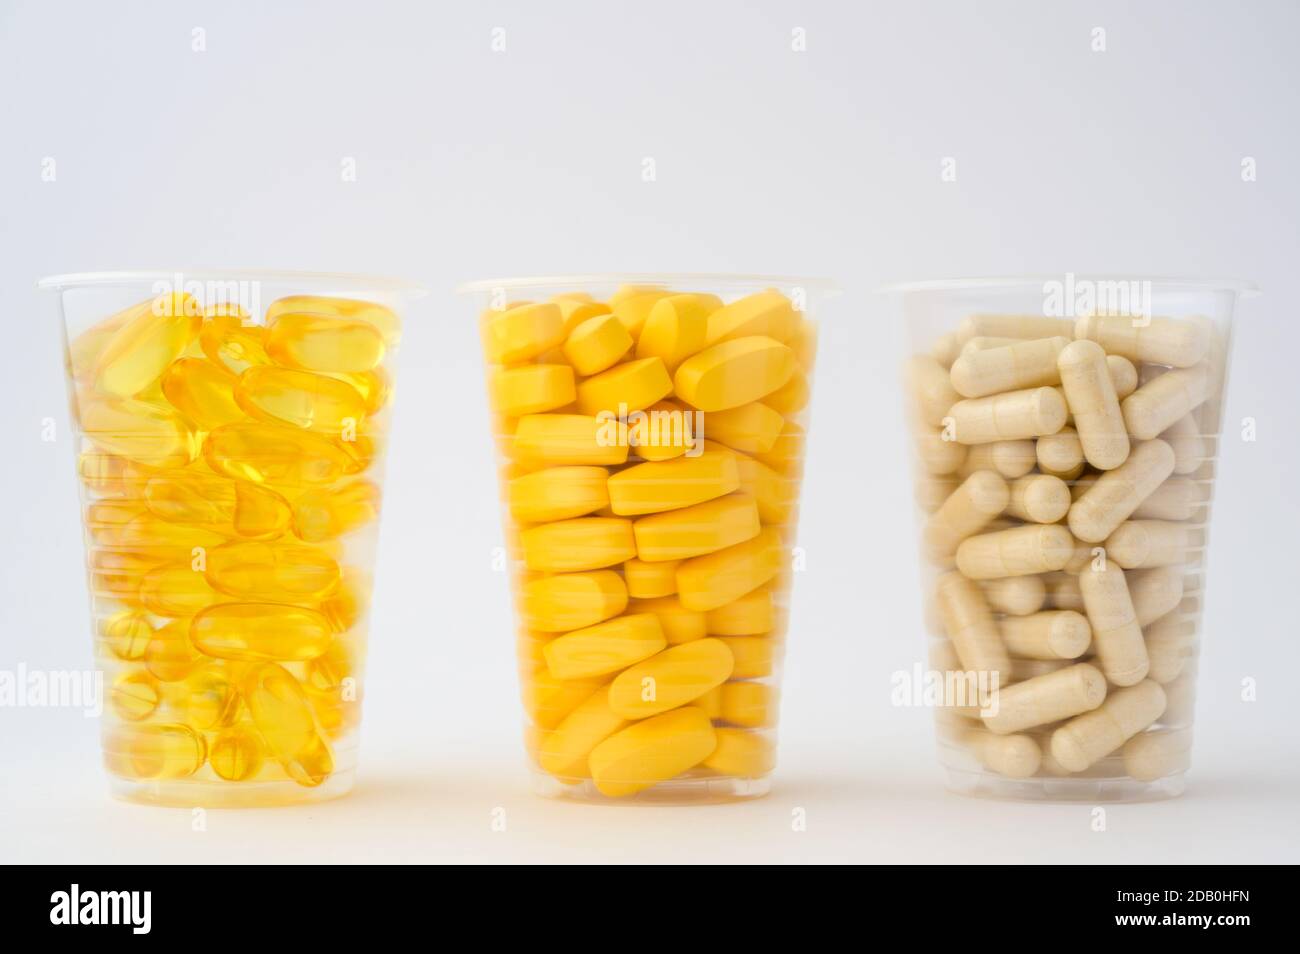 Sport diätetische Ernährung Konzept von drei Plastikbecher mit Pillen Softgels Omega3 Kapsel Vitamine Tabletten auf weißem Hintergrund mit Kopie Platz Stockfoto